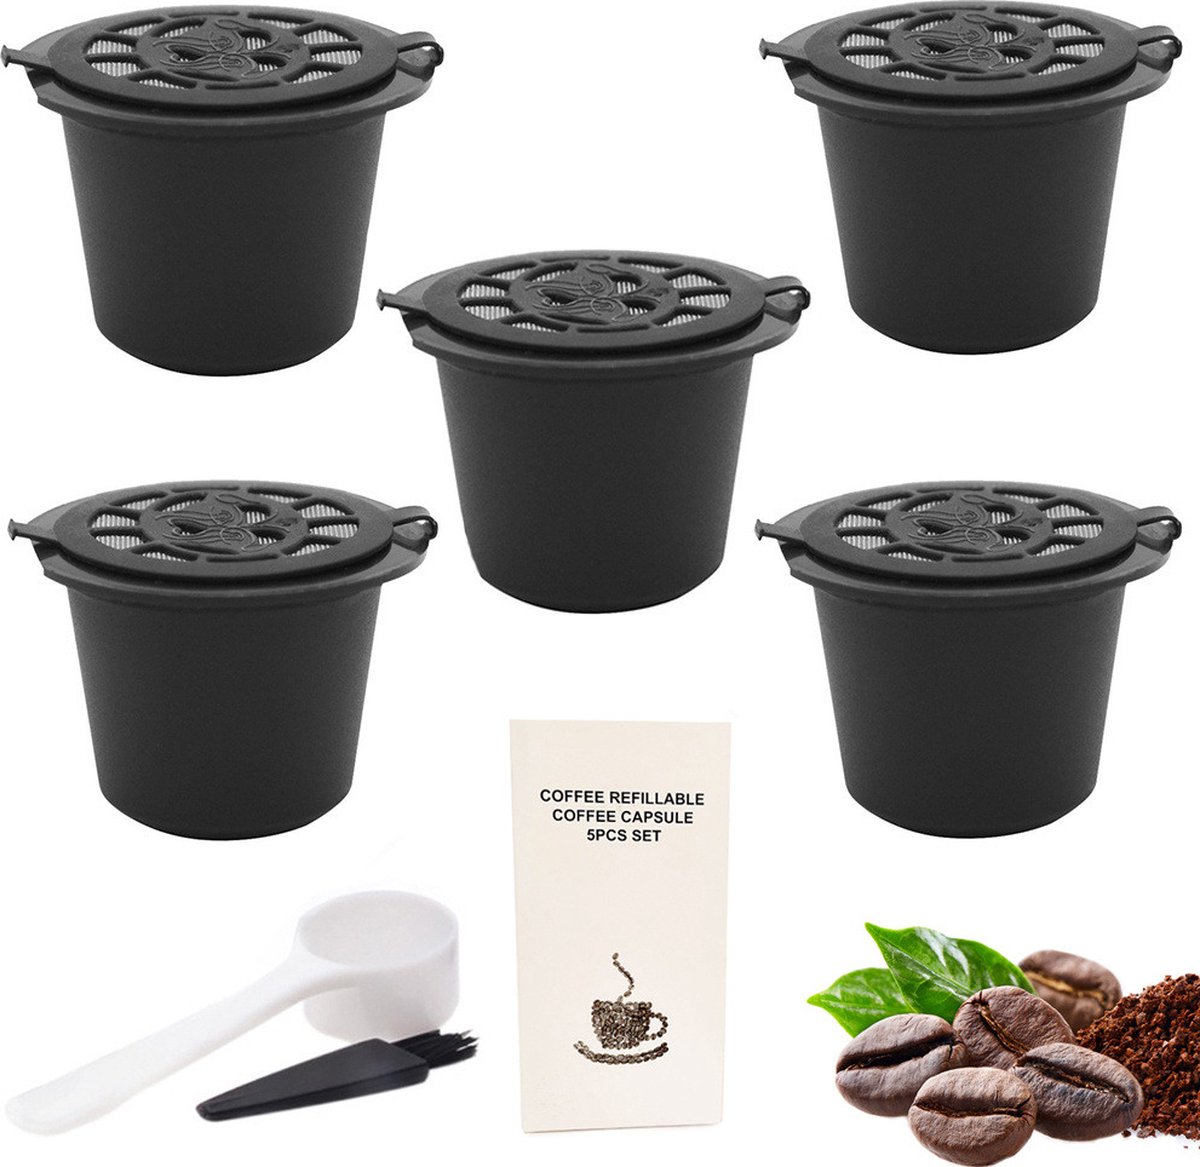 Hervulbare Nespresso Koffie Cups - Koffie Cups Capsules - Navulbare Koffiecapsules Nespresso - New reusable coffee cups - Herbruikbare Koffiecups Nespresso - Milieubewust - Kostenbesparend - Milieuvriendelijk - GRATIS Schepje & Reinigingskwastje